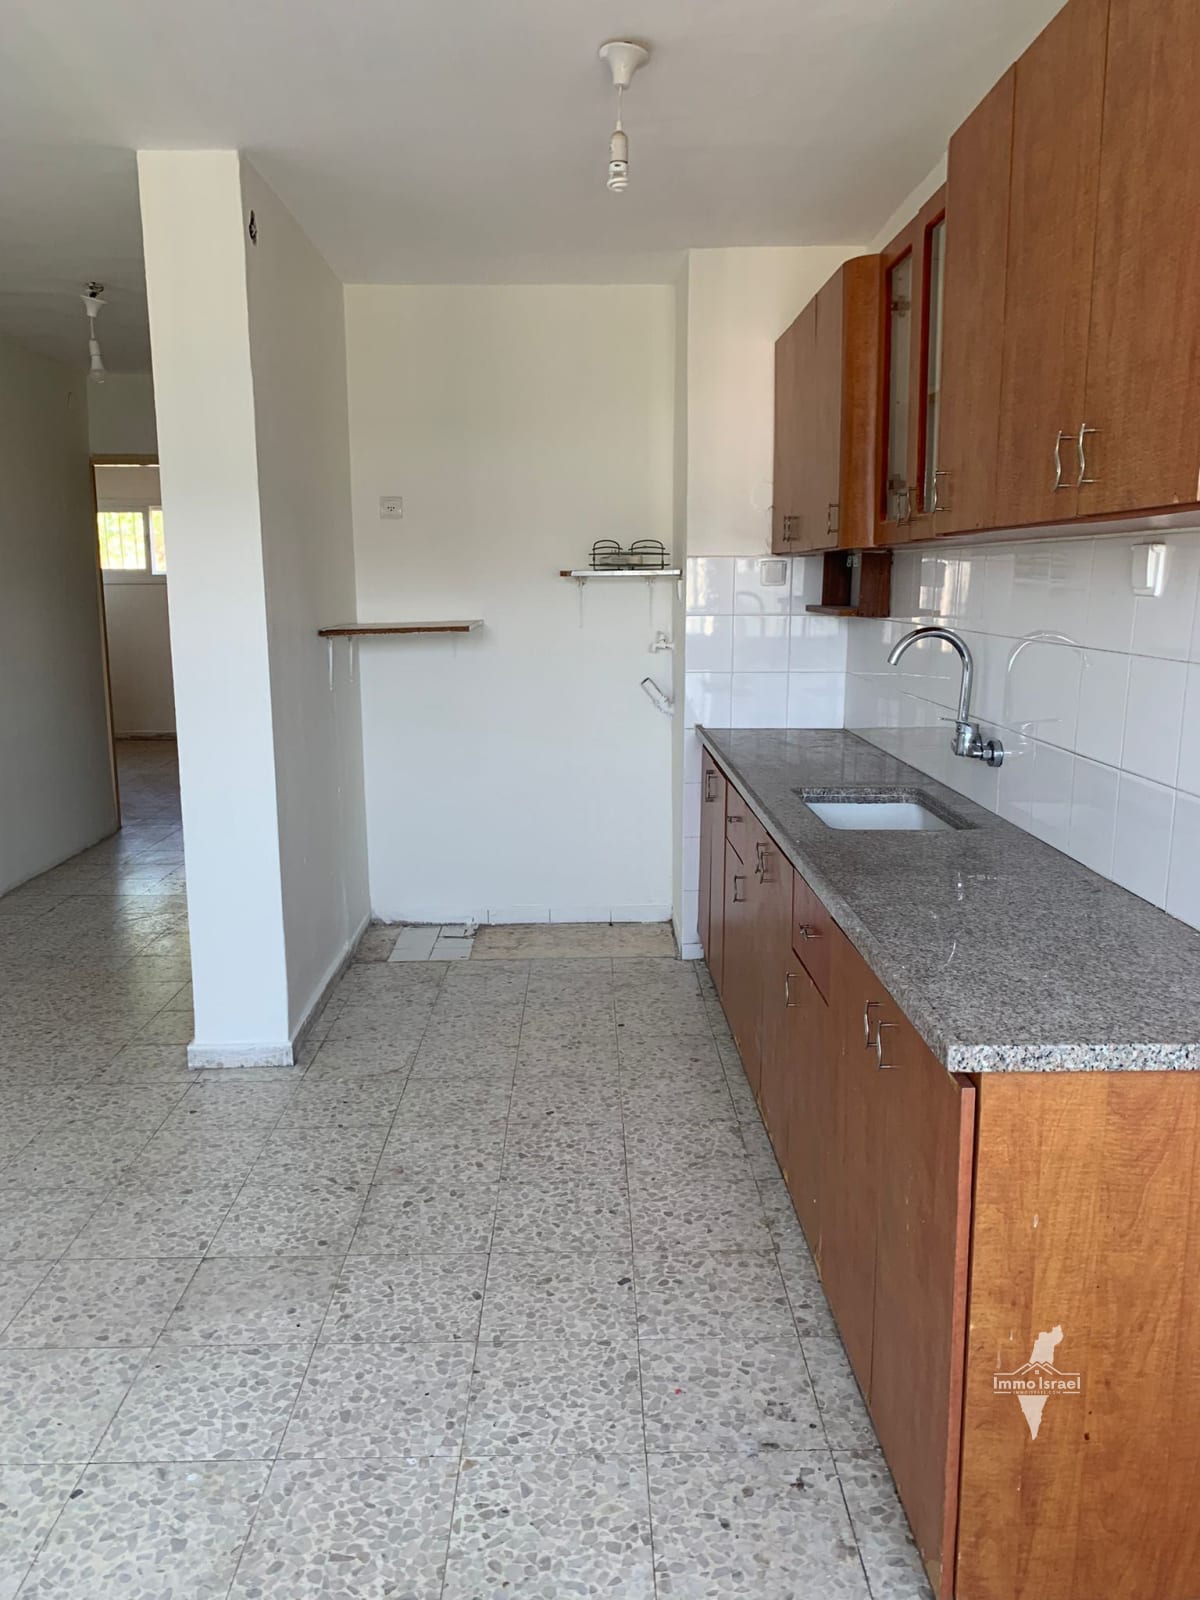 For Rent: 3-Room Apartment on Hose San Martin Street, Jerusalem